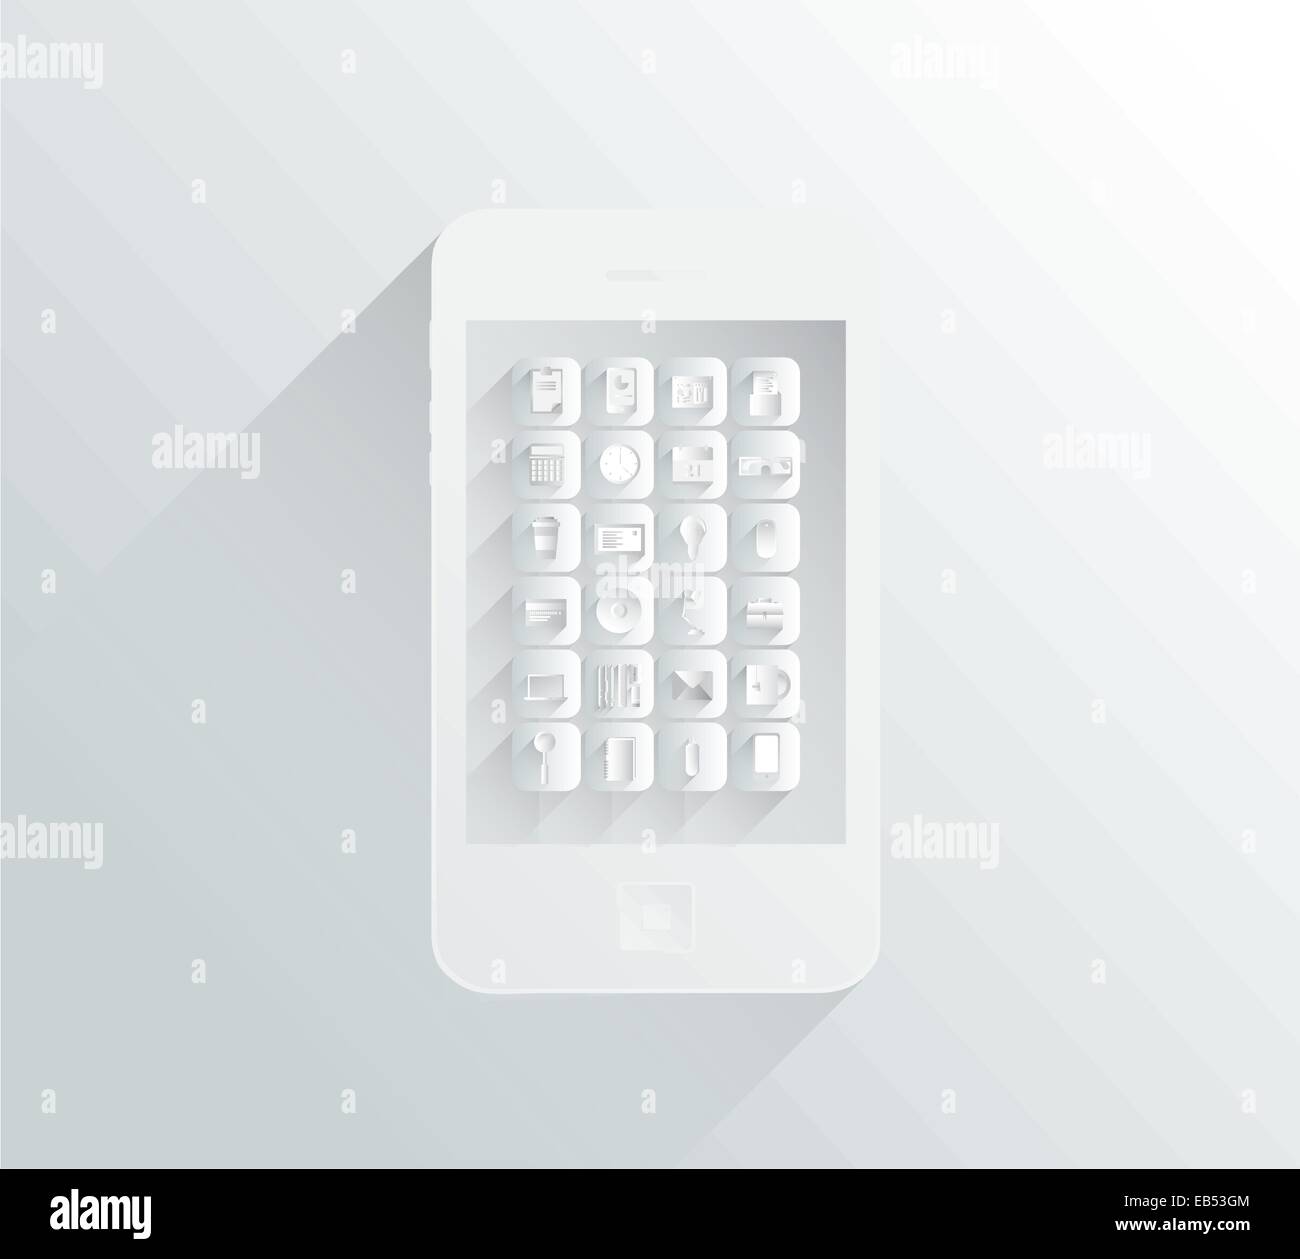 Smartphone blanc et gris avec des apps dans une conception simple Illustration de Vecteur